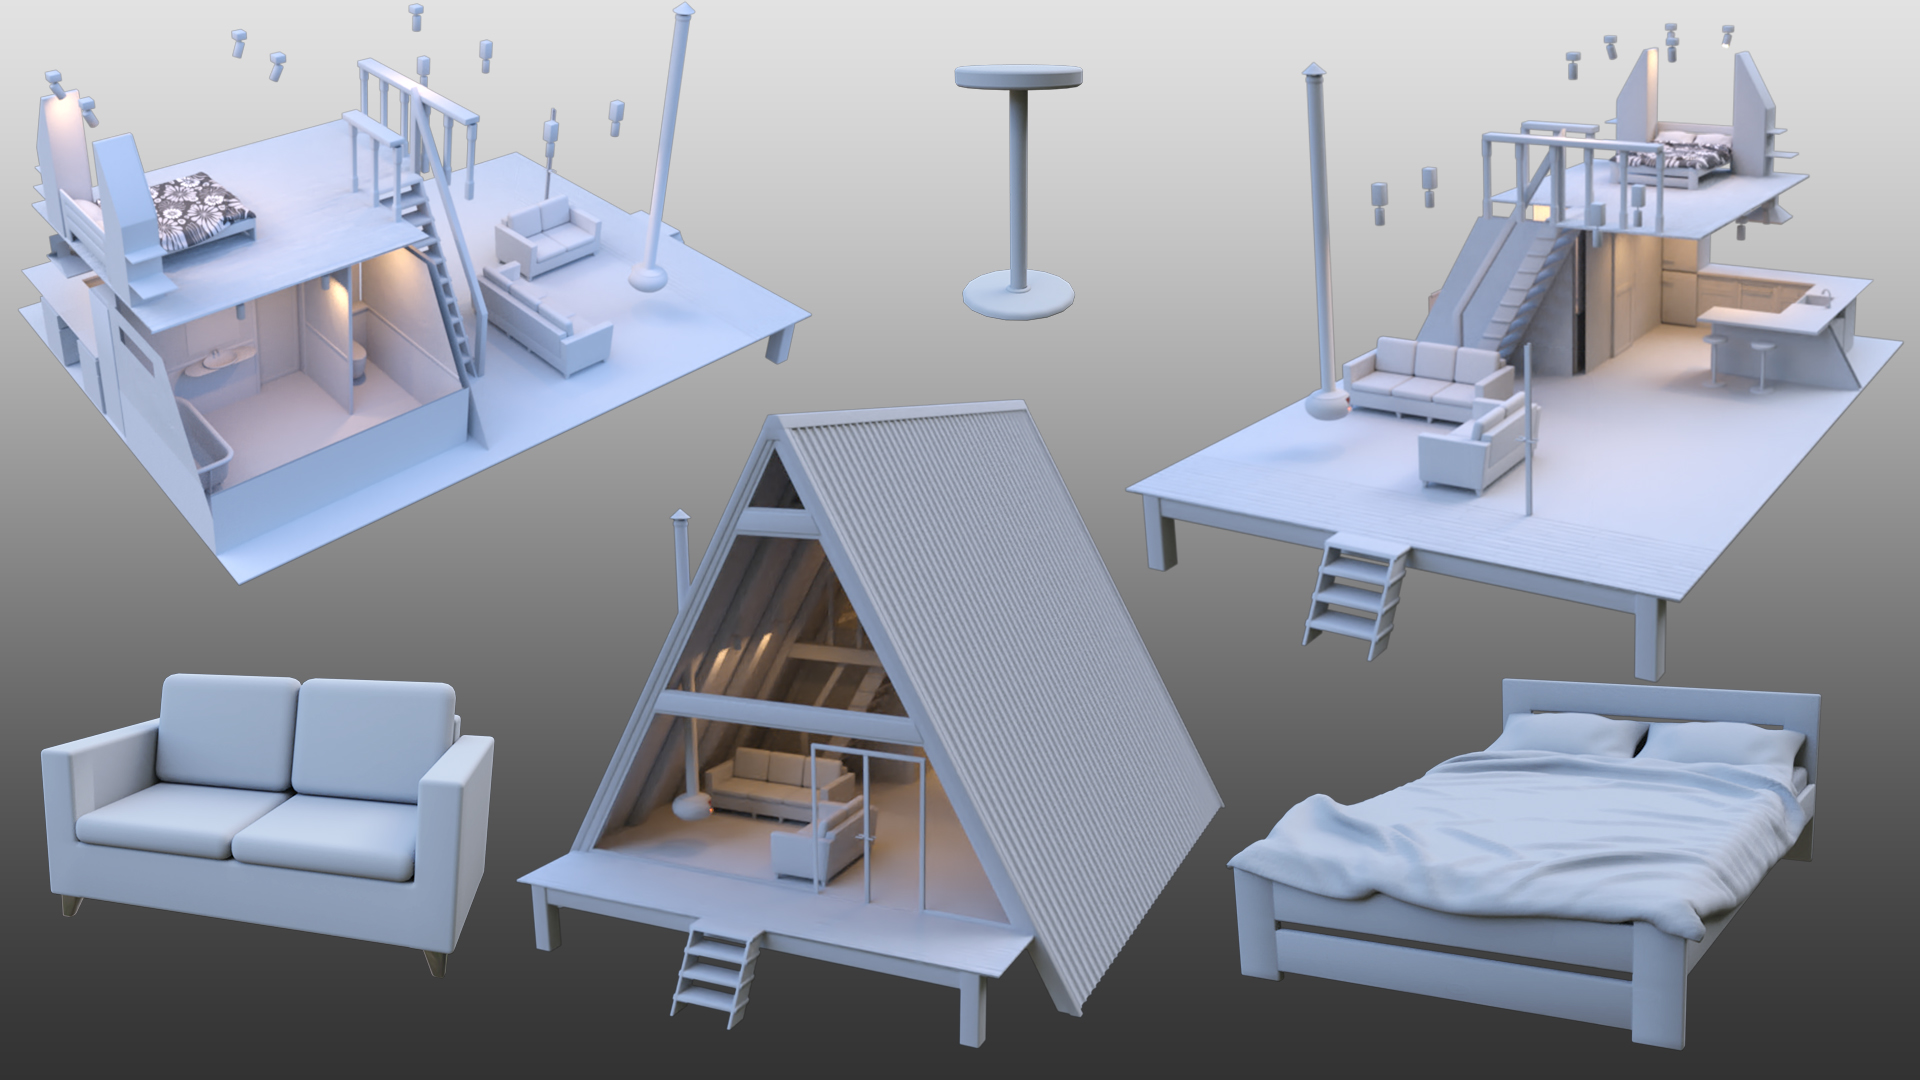 A-Frame Cabin by: RavenLoor, 3D Models by Daz 3D